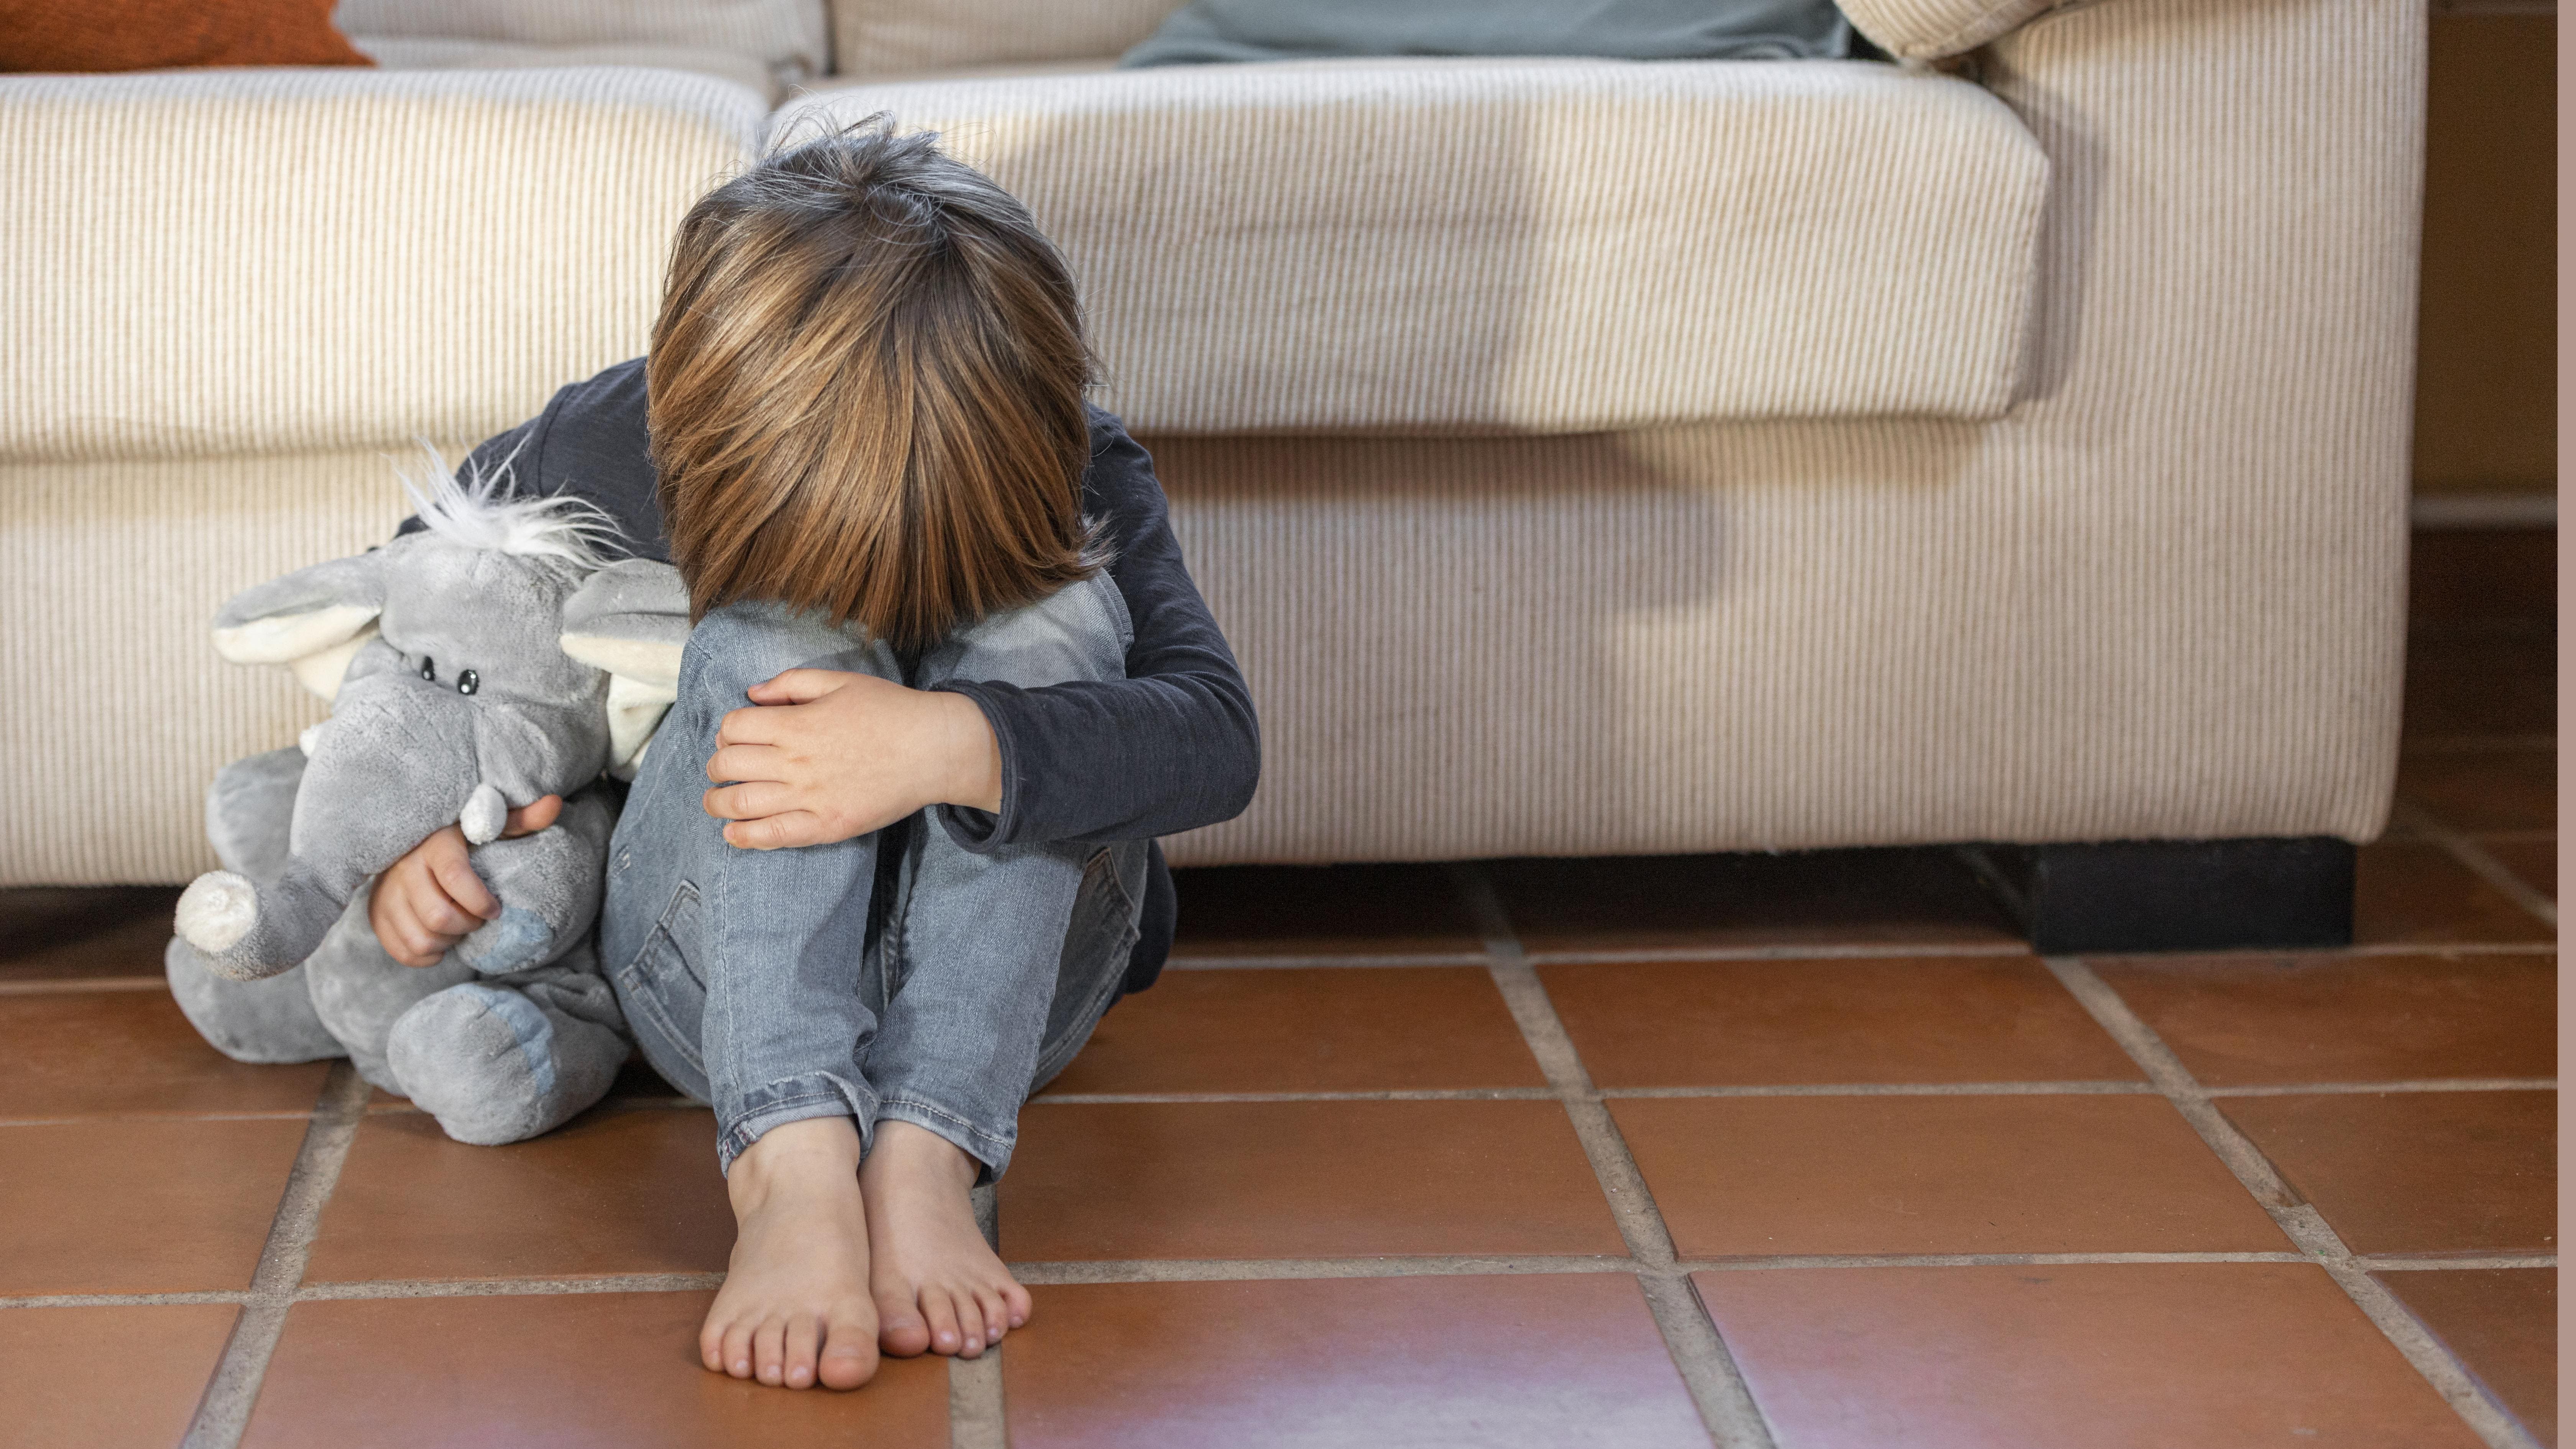 Salud infantil: el 53% de niños con problemas emocionales los expresa con complicaciones físicas